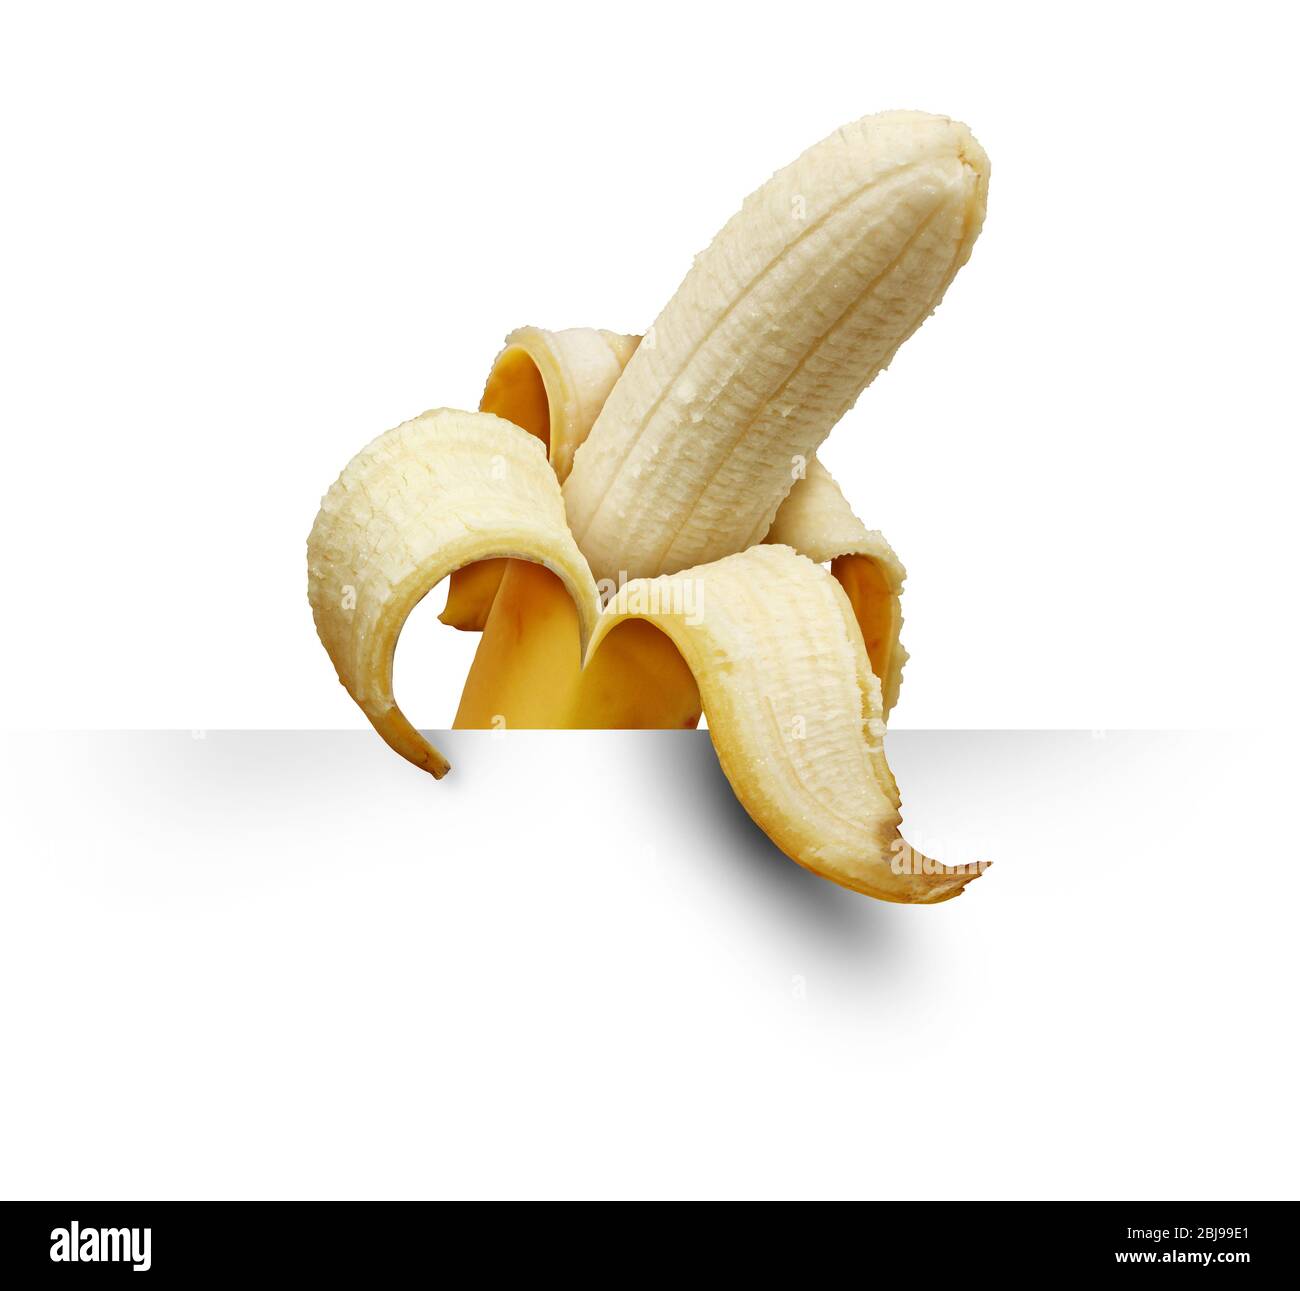 Simbolo di banana e di frutta tropicale come simbolo di banane pelate con un elemento alimentare giallo. Foto Stock